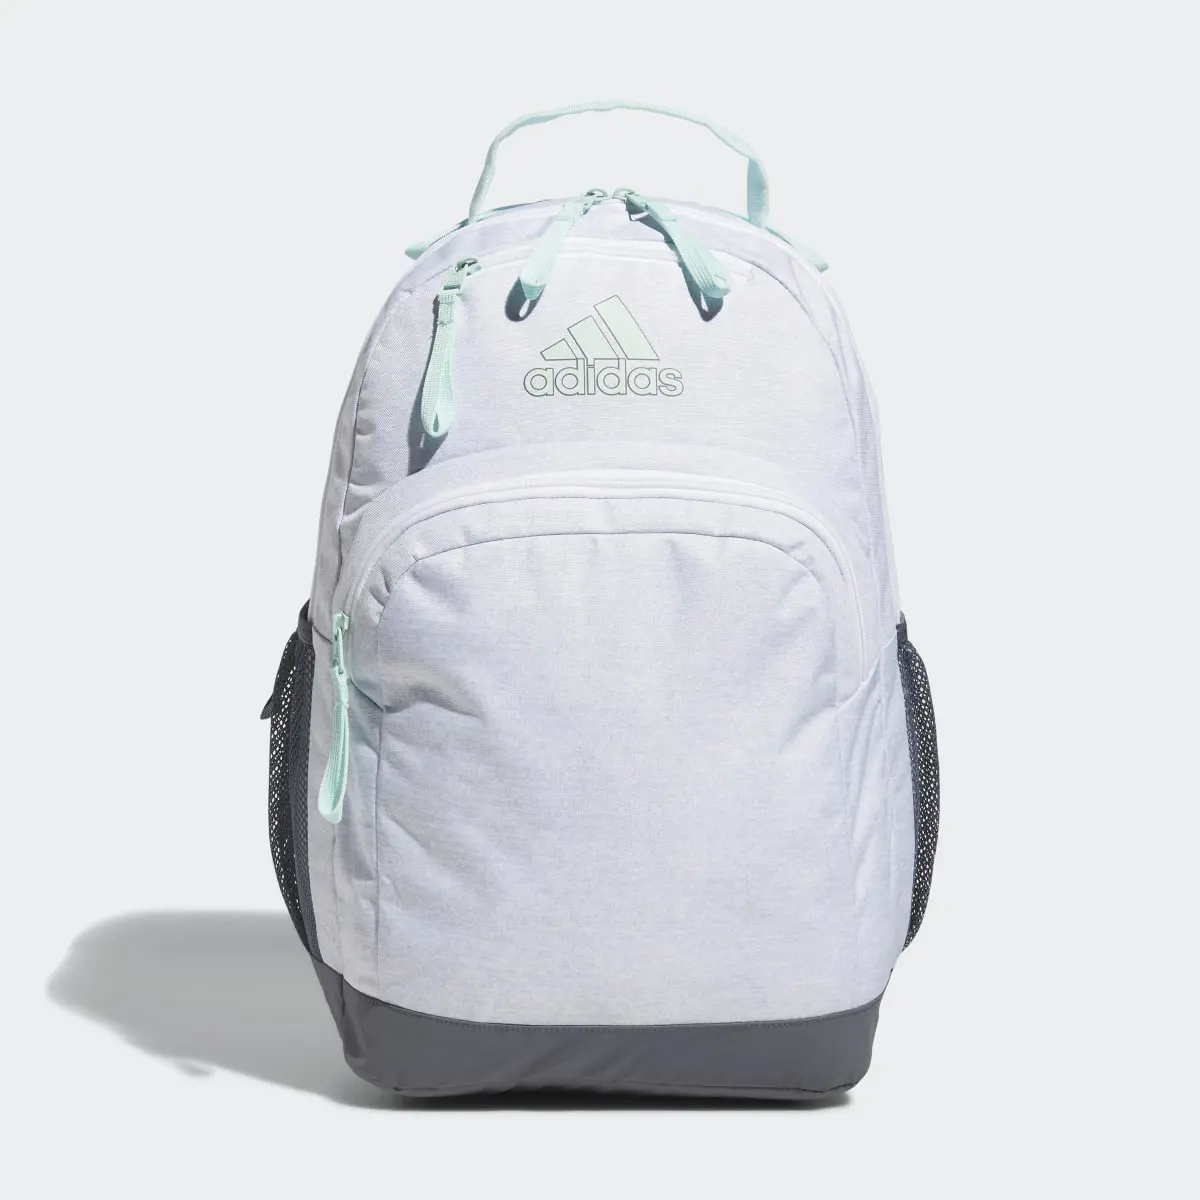 Adidas Adaptive Backpack. 2